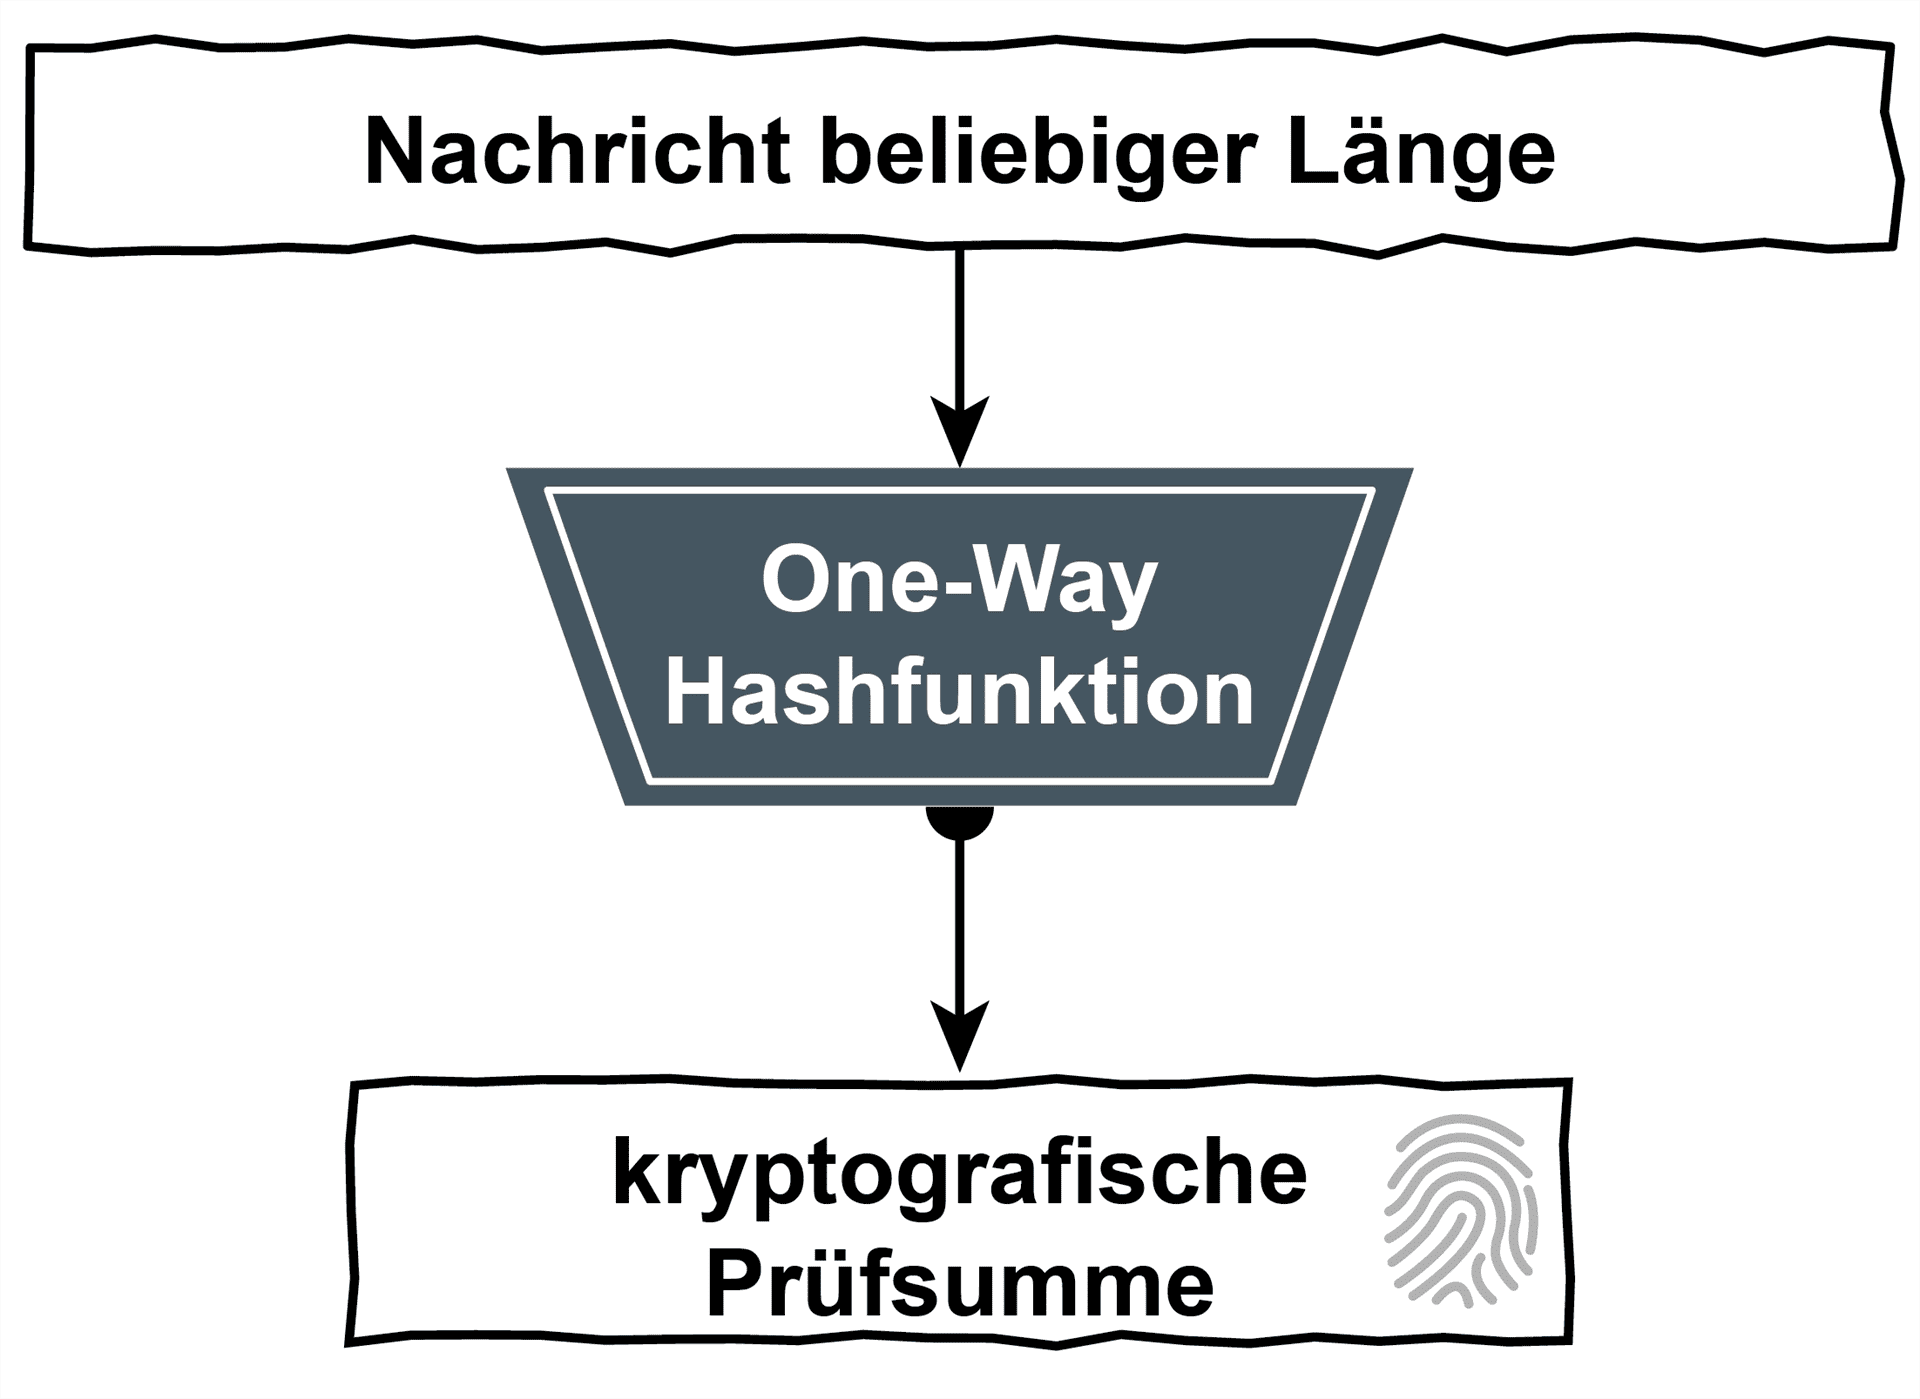 One-Way-Hashfunktionen als Ablaufdiagramm